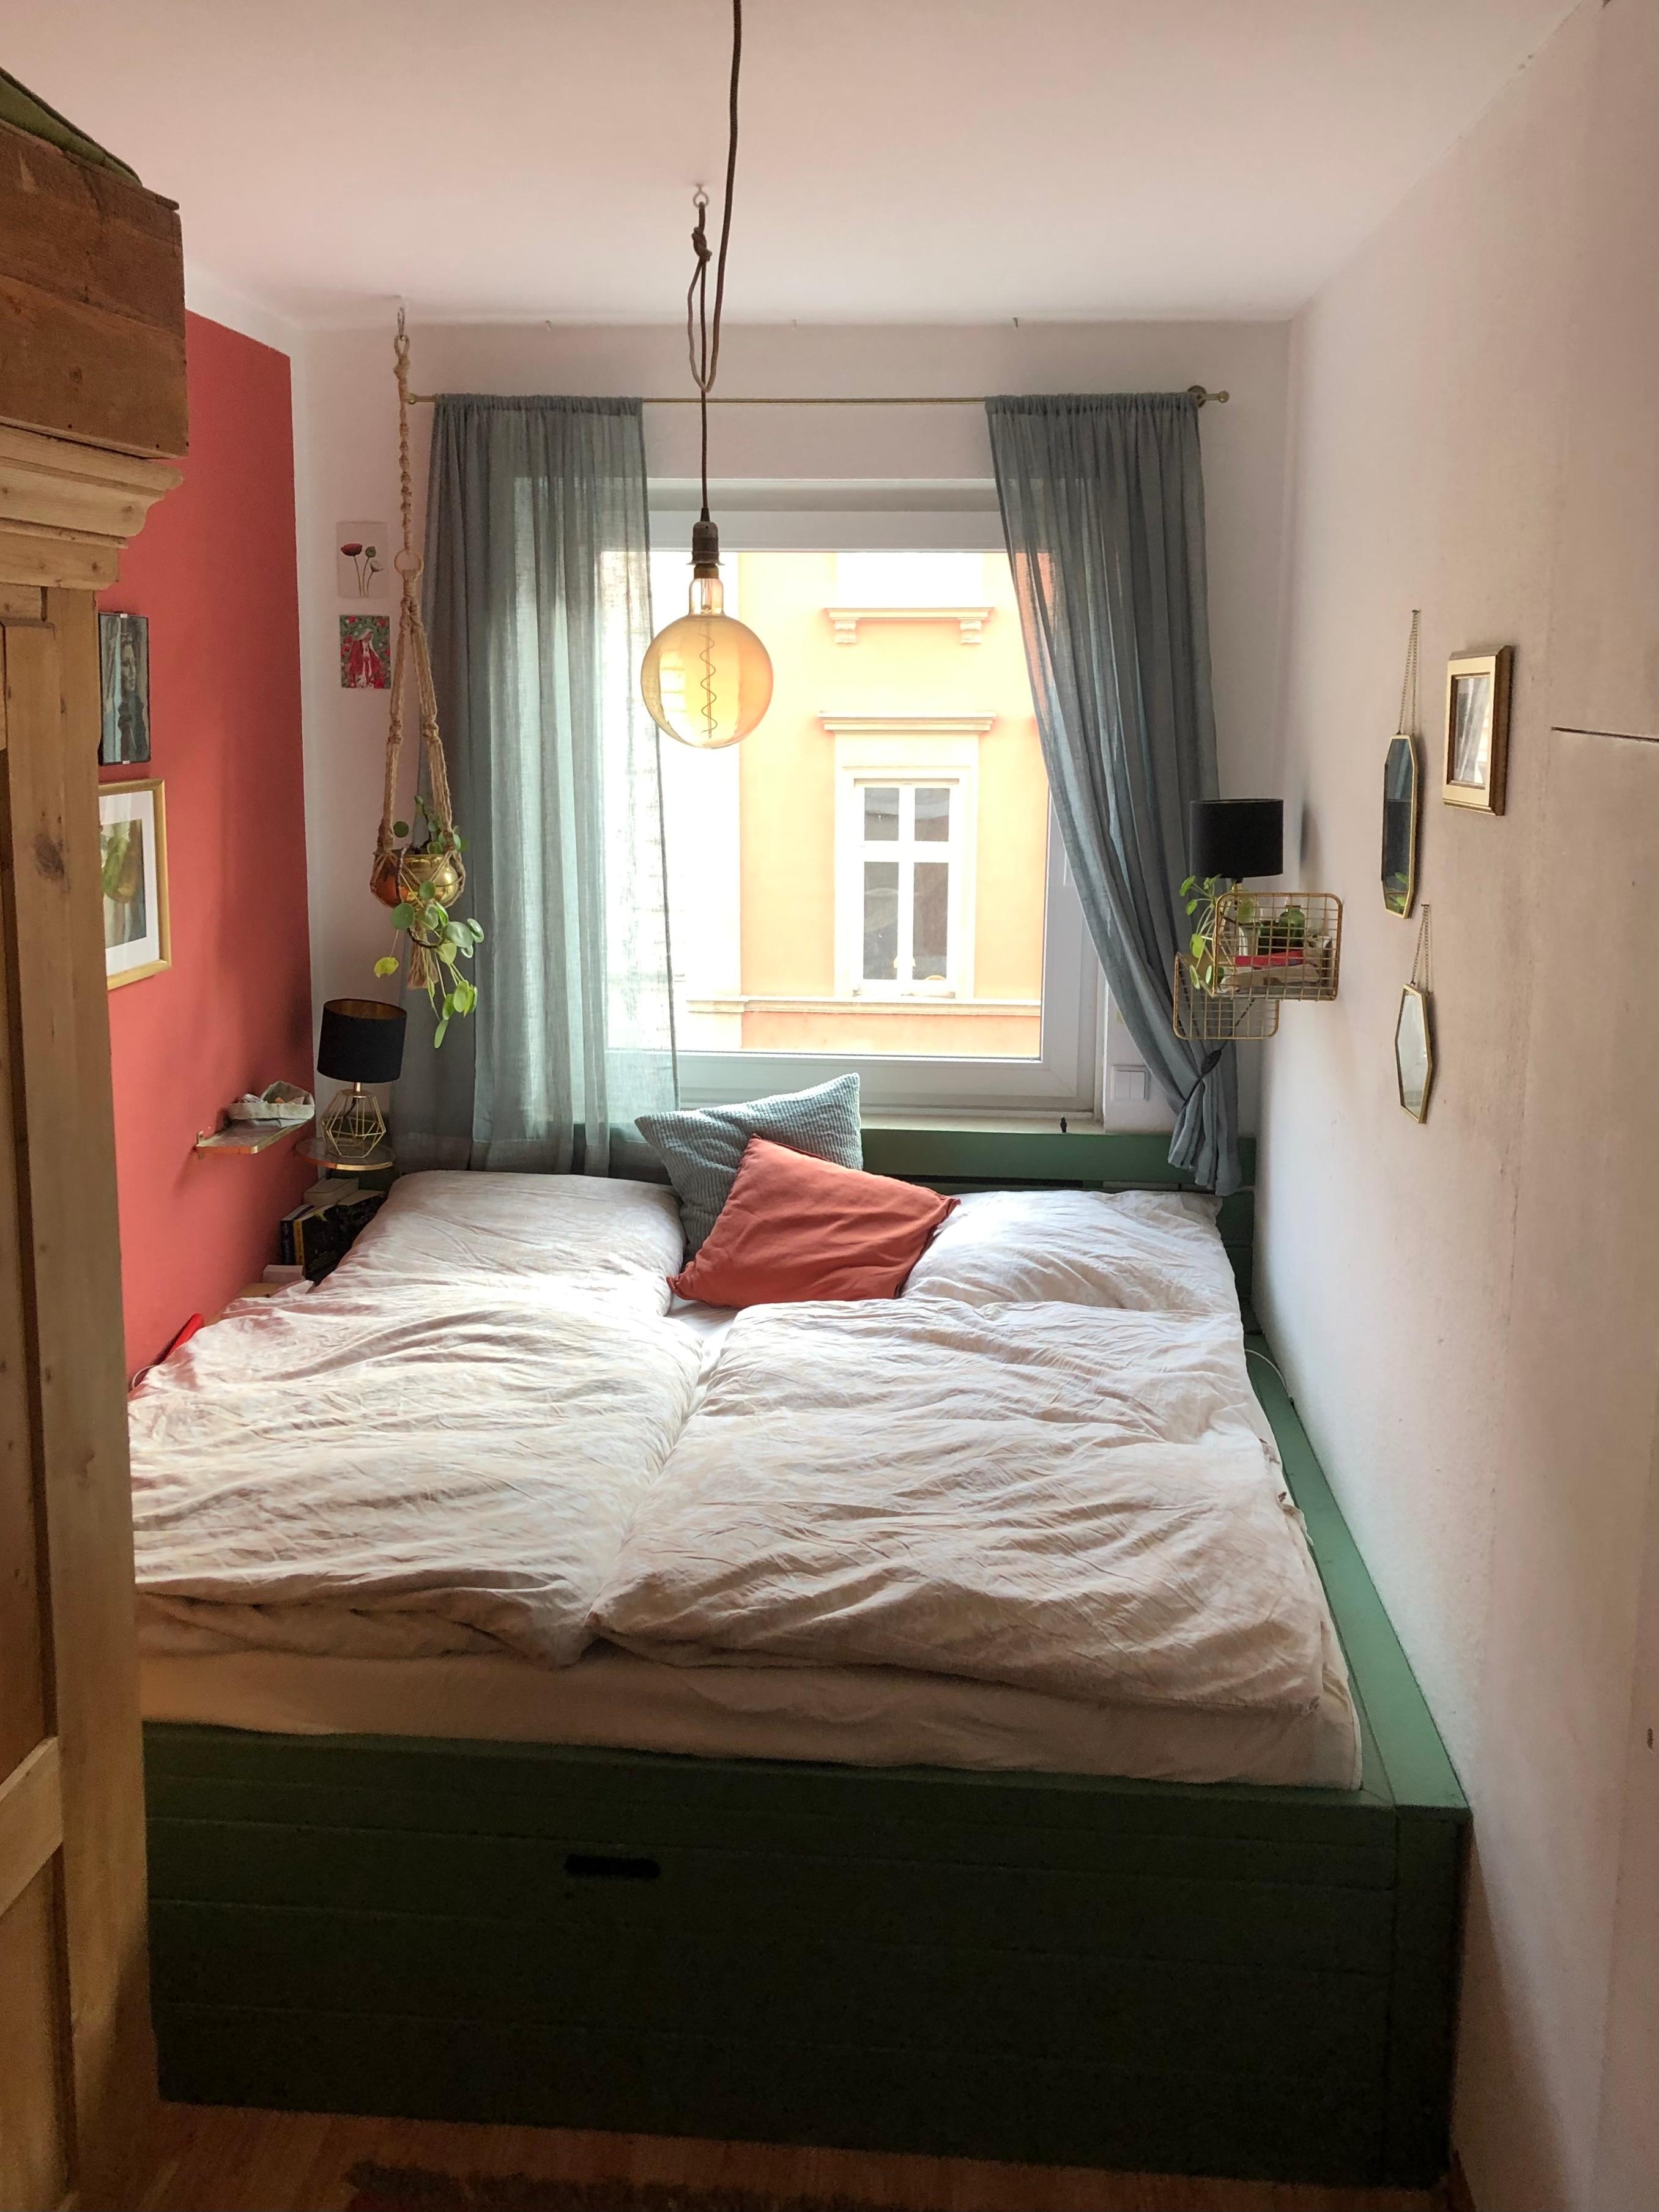 gemütliche Koje #schlafzimmer #tiny #kleinerraum #rotundgrün #rotewandfarbe